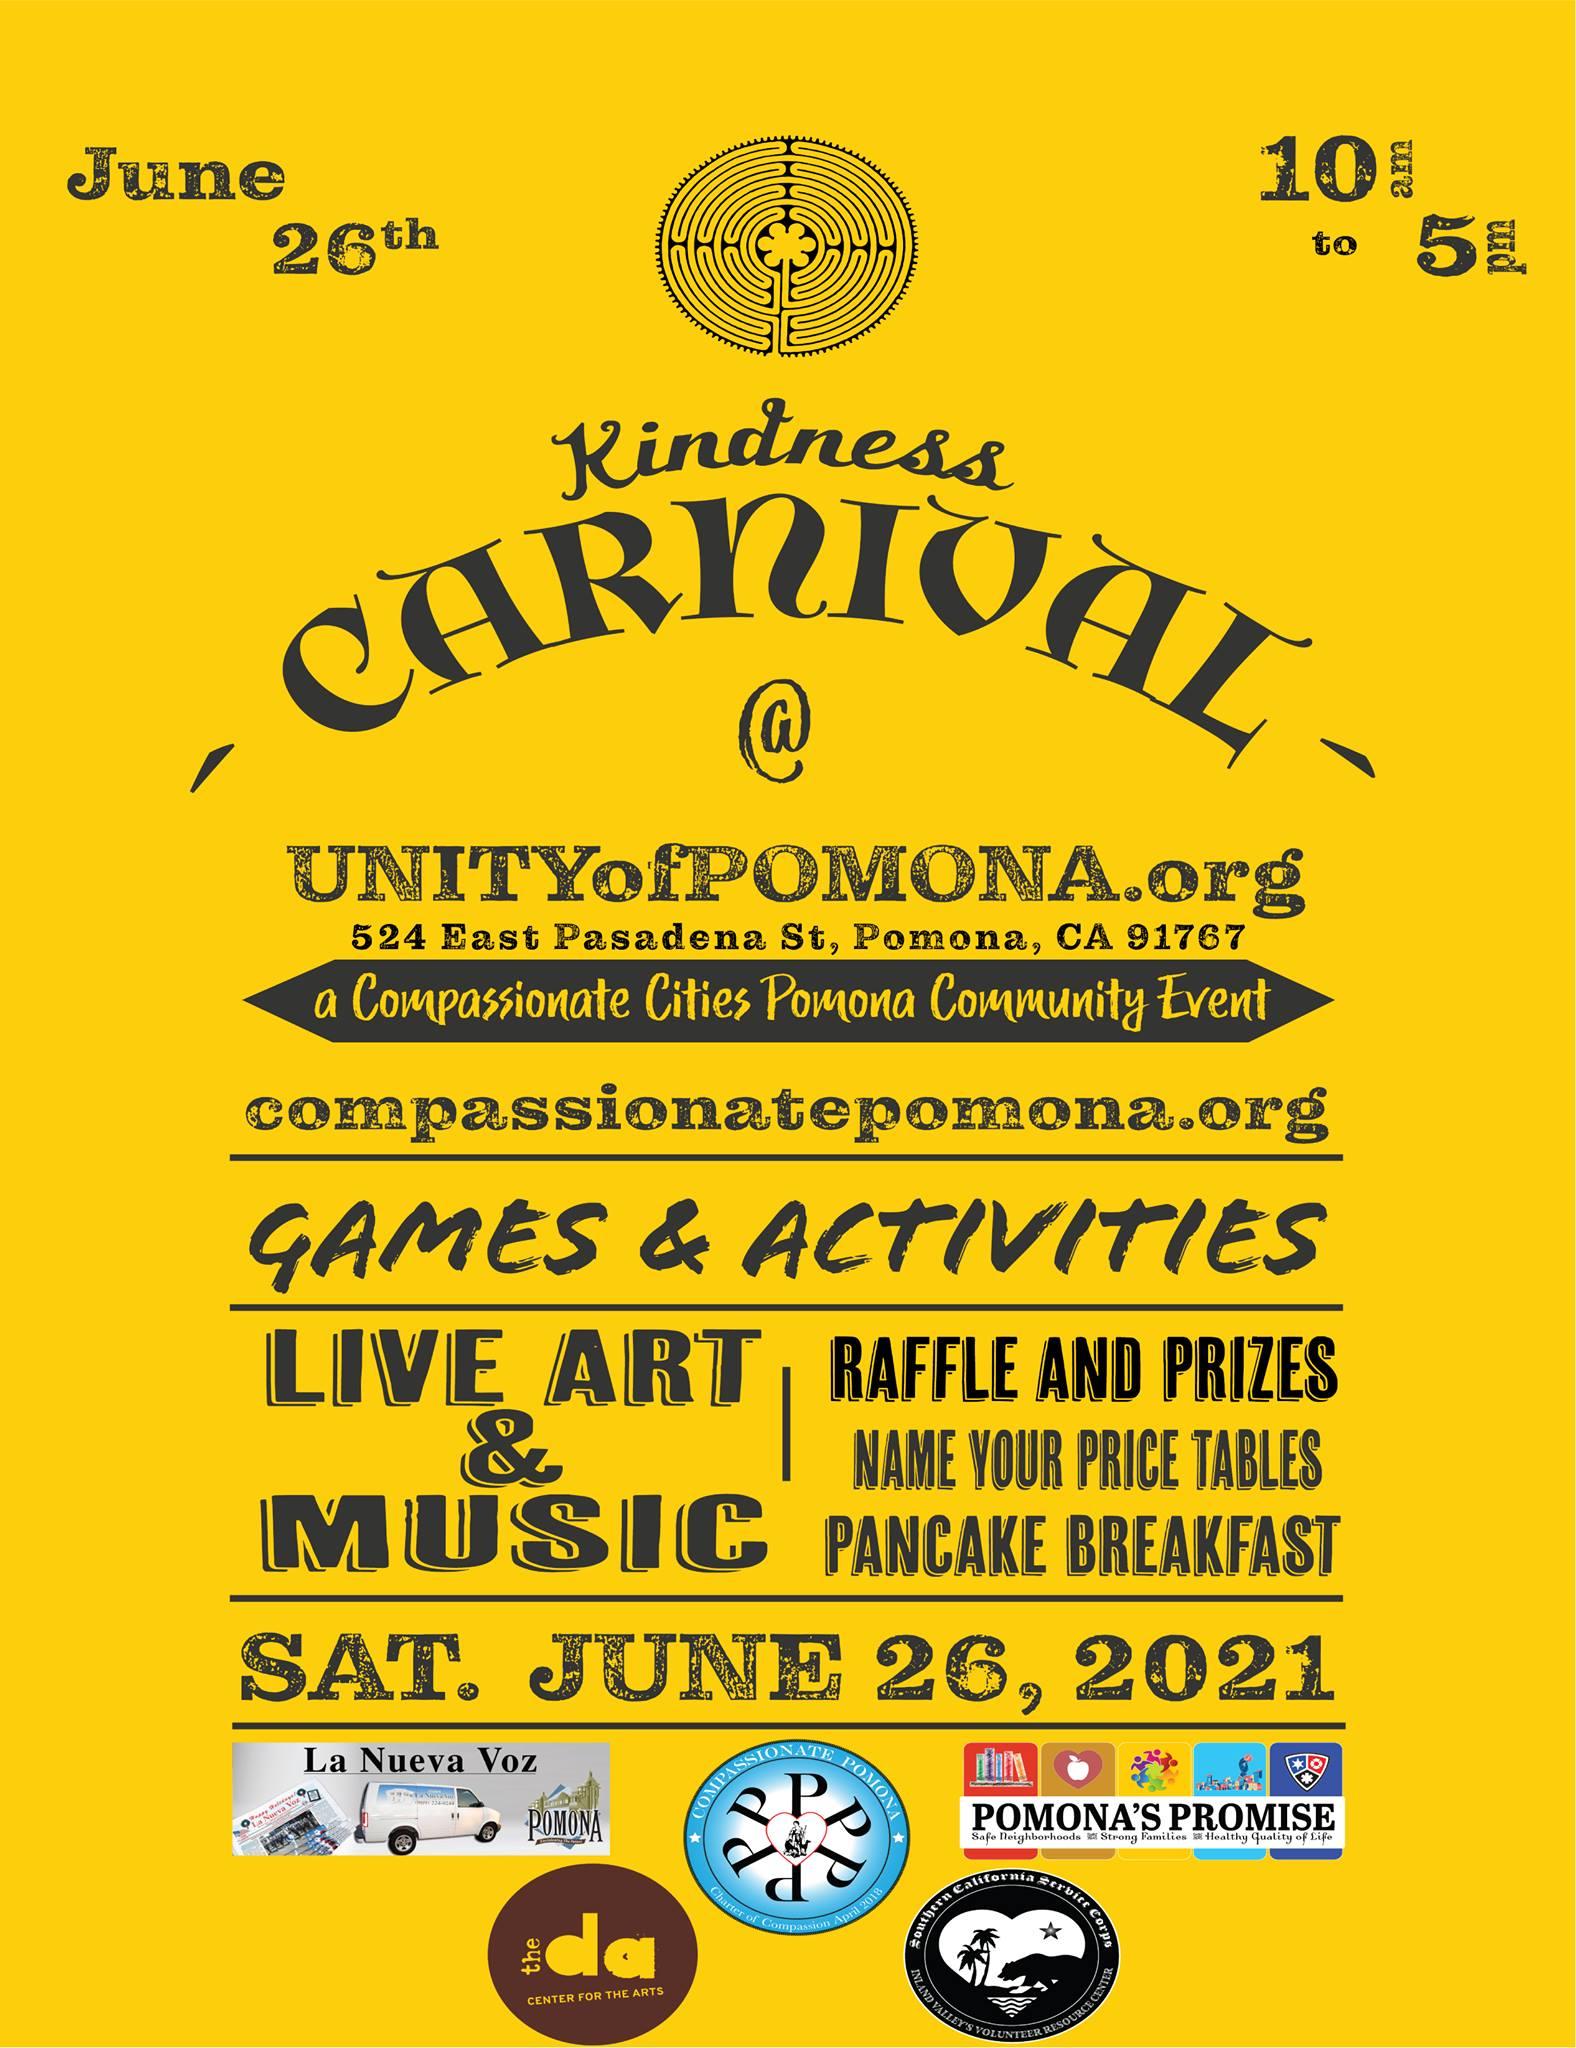 Kindness Carnival flyer